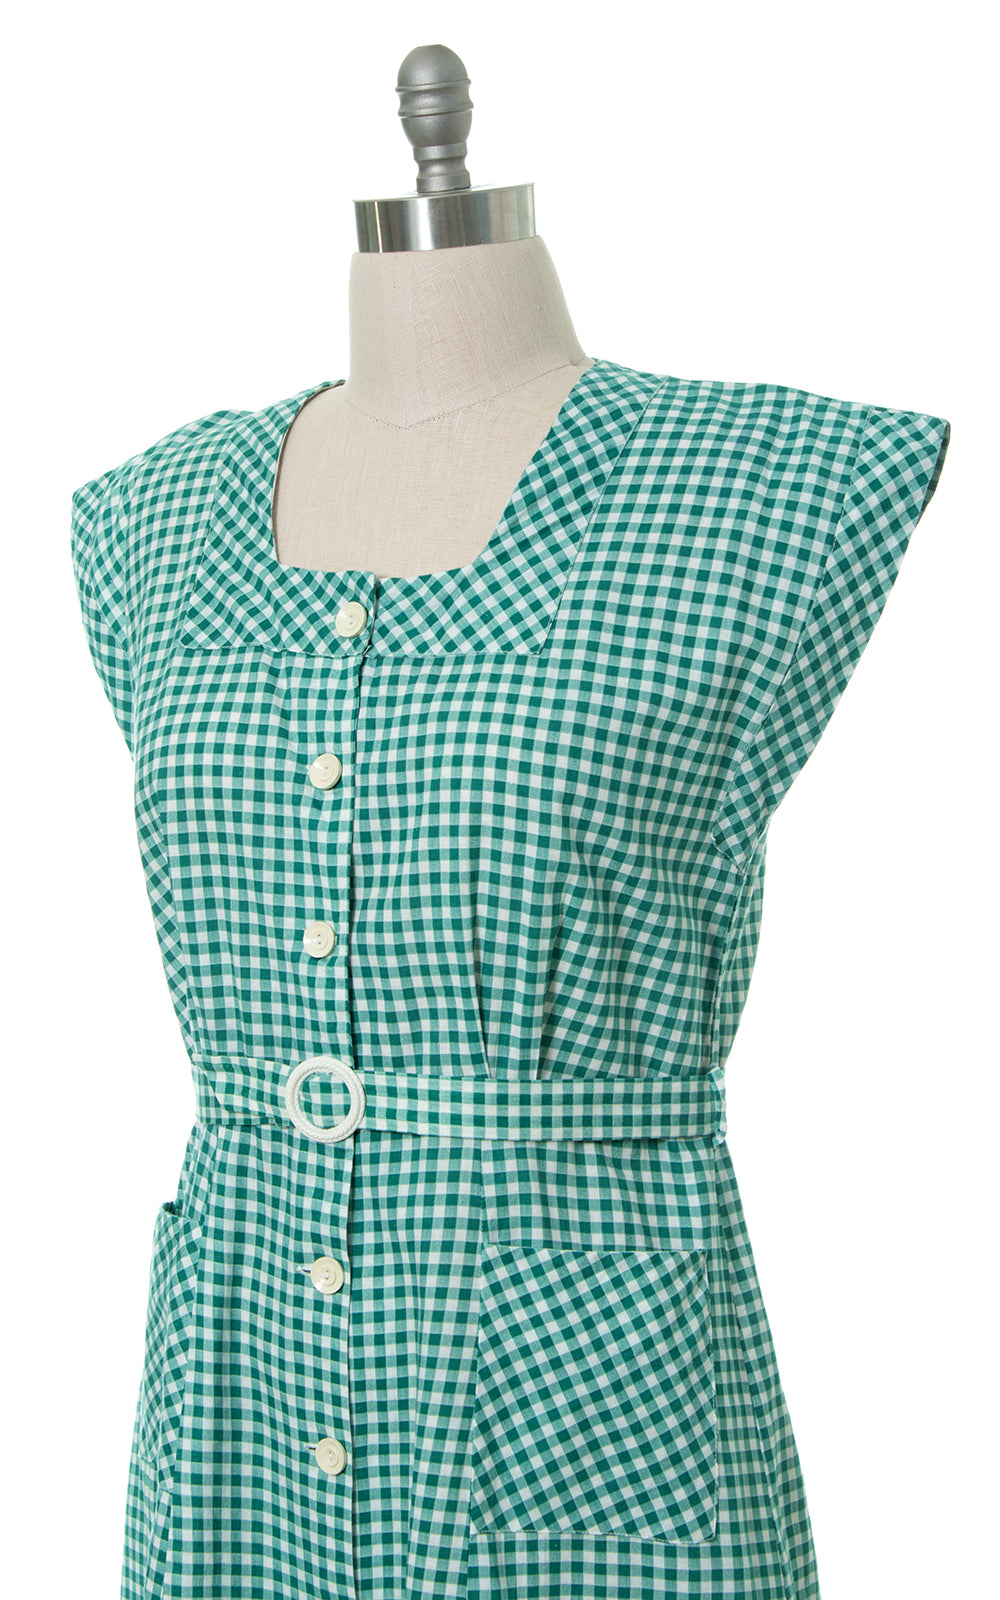 1940s Green Gingham Shirtwaist Dress with Pockets